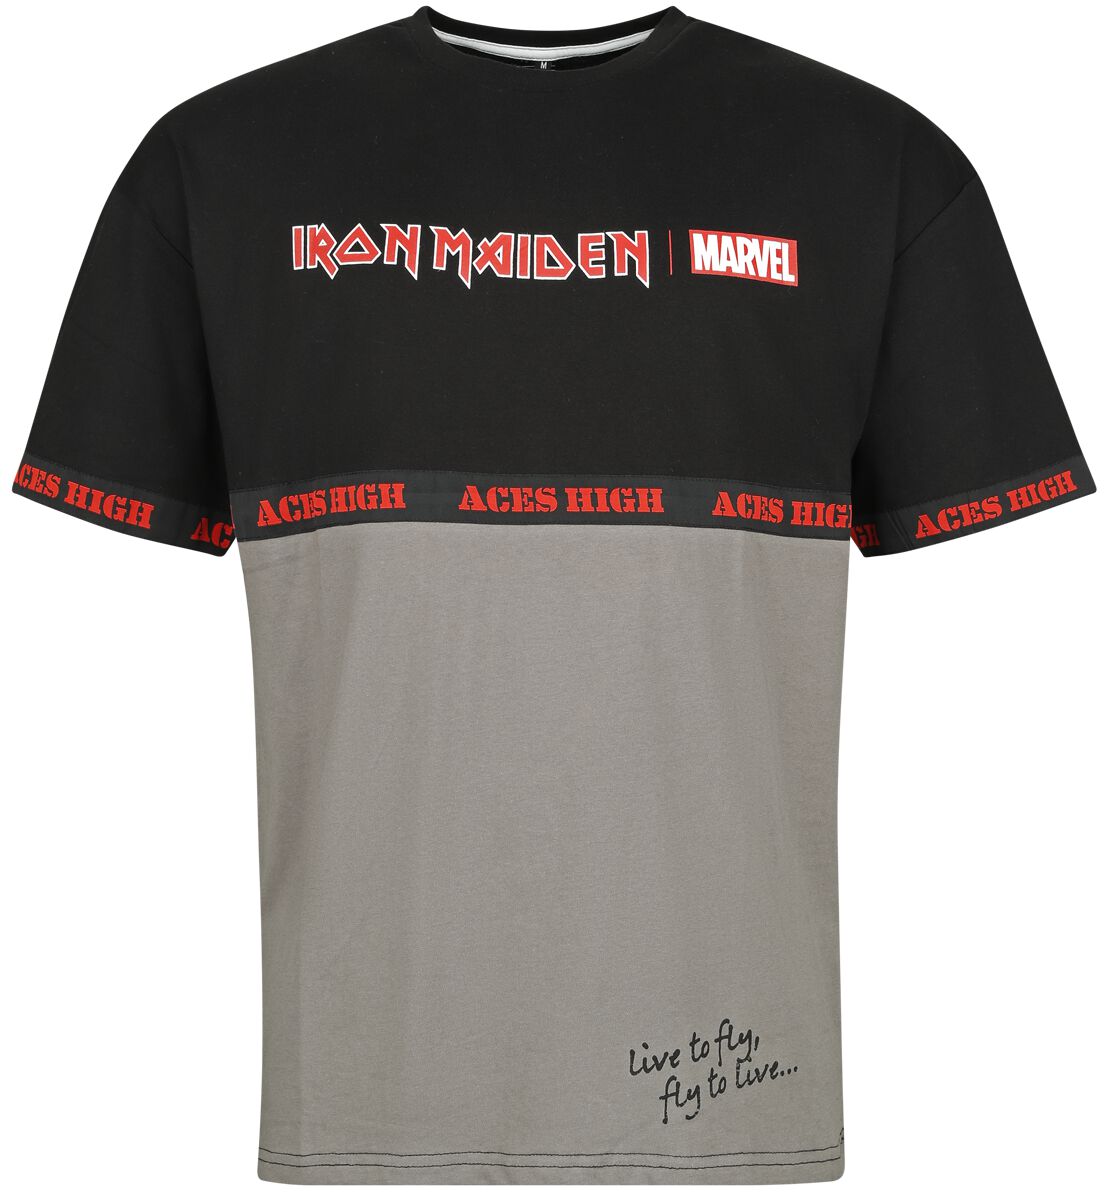 Iron Maiden Iron Maiden x Marvel Collection - Aces High War Machine T-Shirt schwarz grau in M